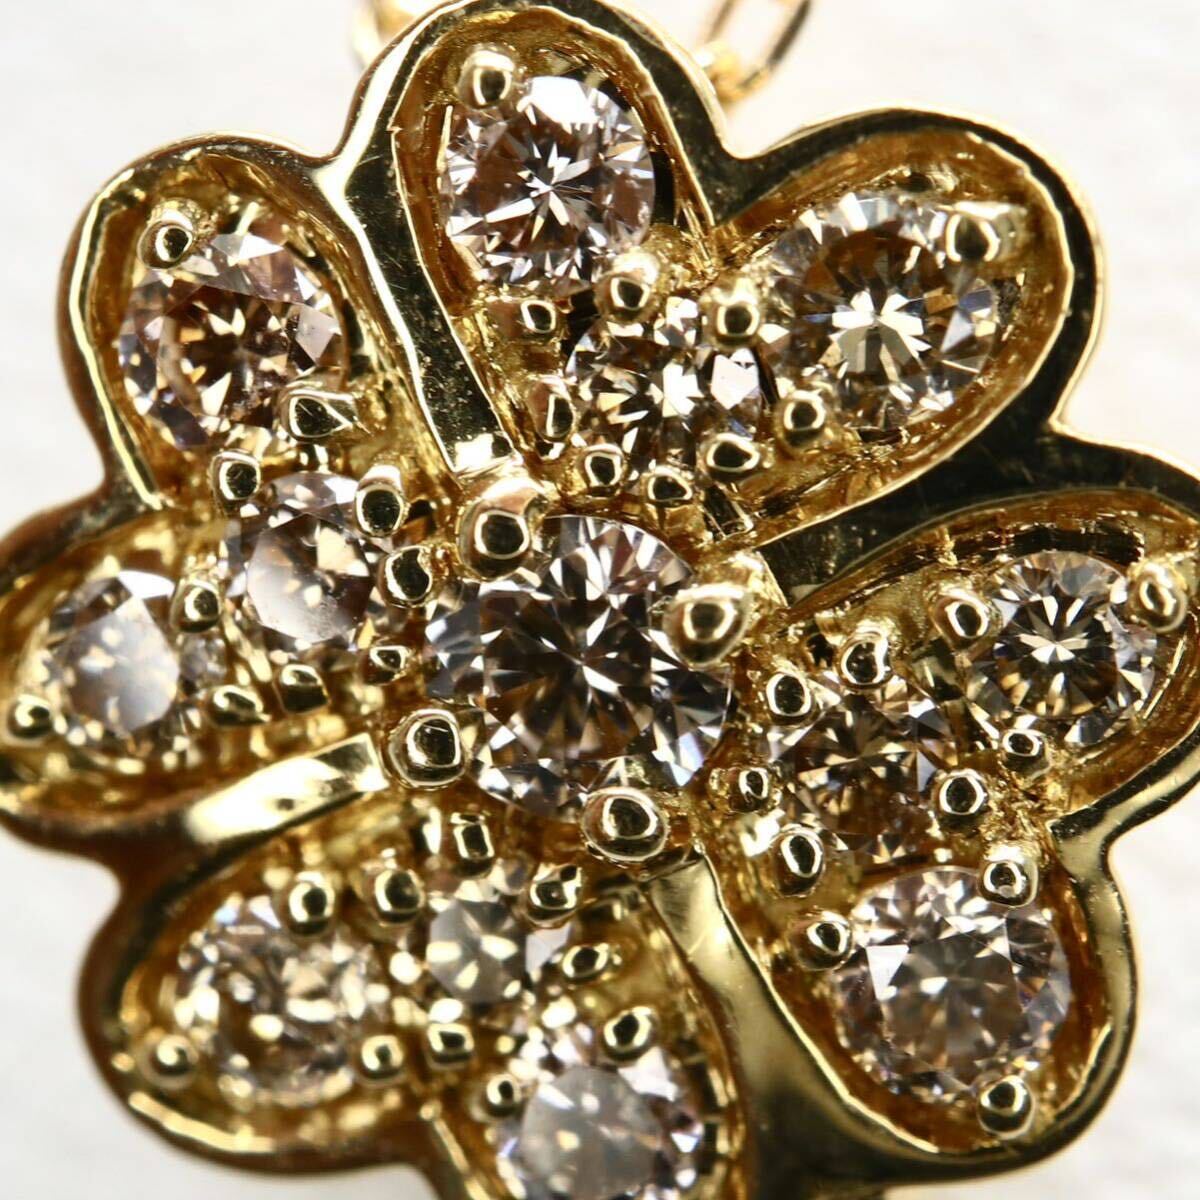 GSTV(ジーエスティーヴィー)《K18 天然ダイヤモンドネックレス》A 約2.0g 約45cm 0.2ct necklace diamond jewelry ジュエリー EB0/-の画像5